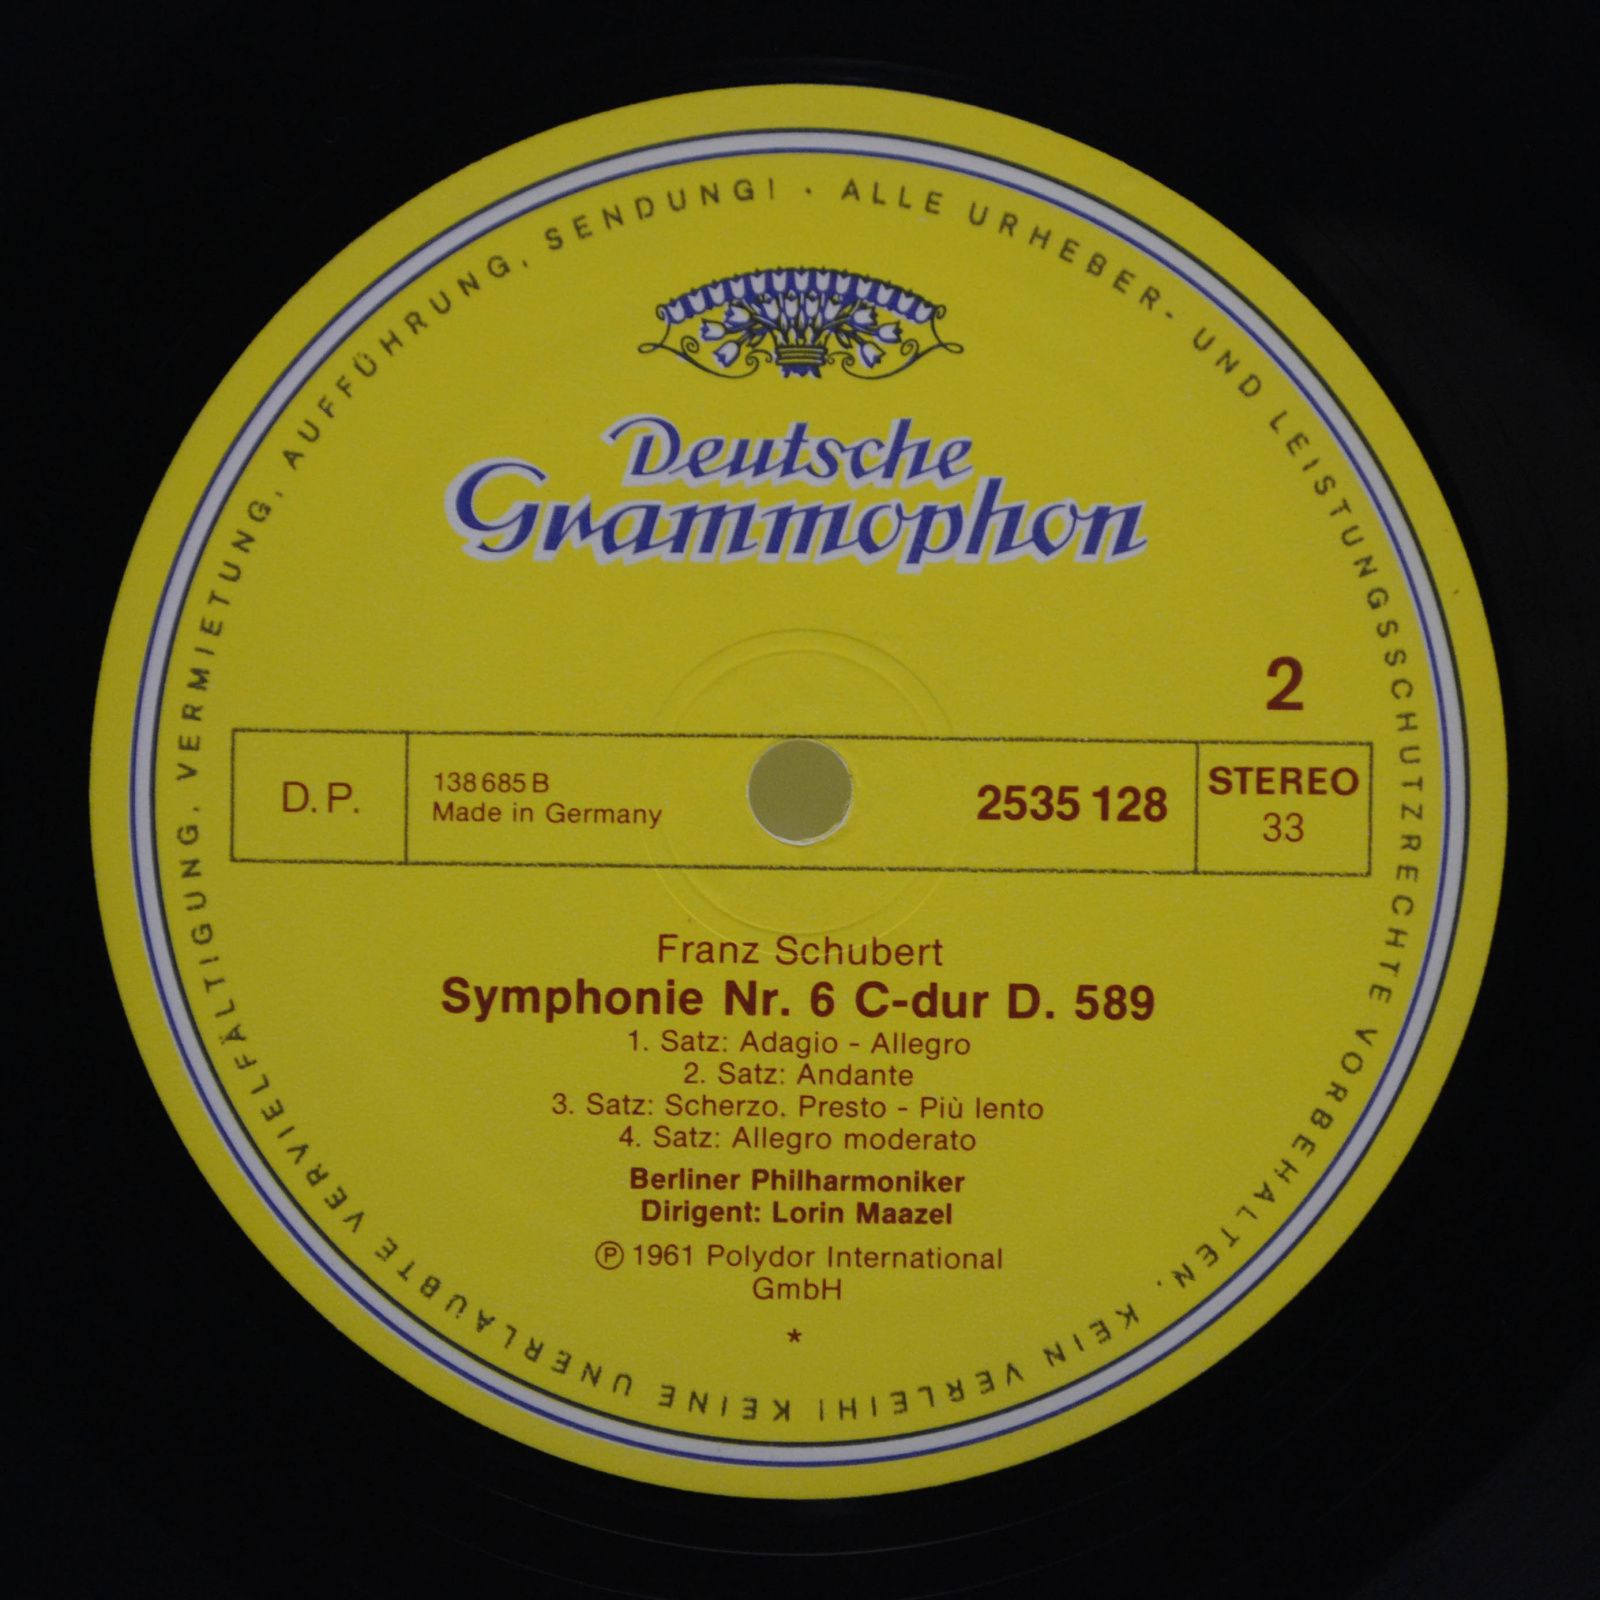 Franz Schubert – Lorin Maazel, Berliner Philharmoniker — 4. »Tragische« Und 6. Symphonie, 1971